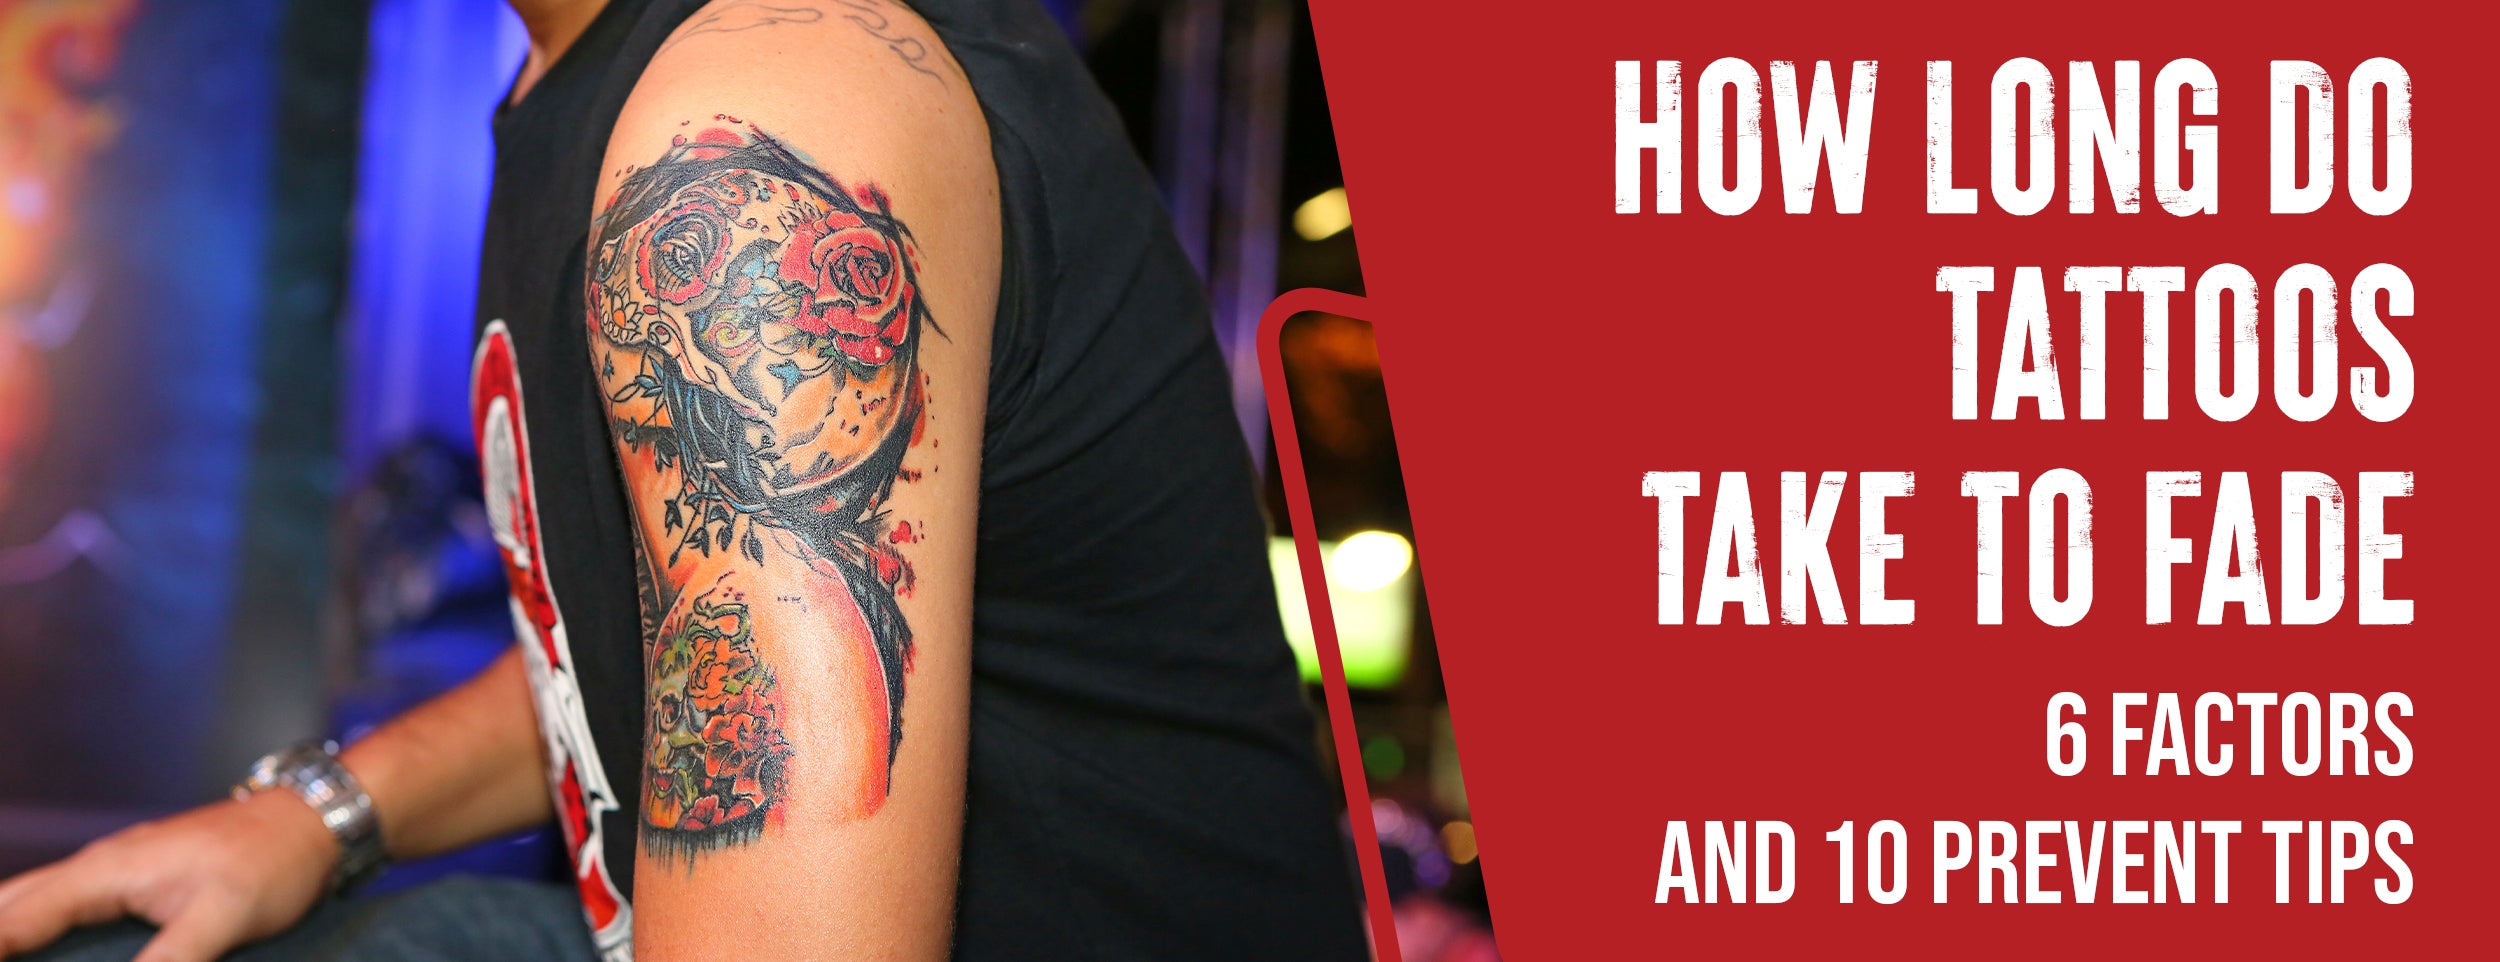 Temporary tattoos: Texas parlor offering made-to-fade designs | kens5.com